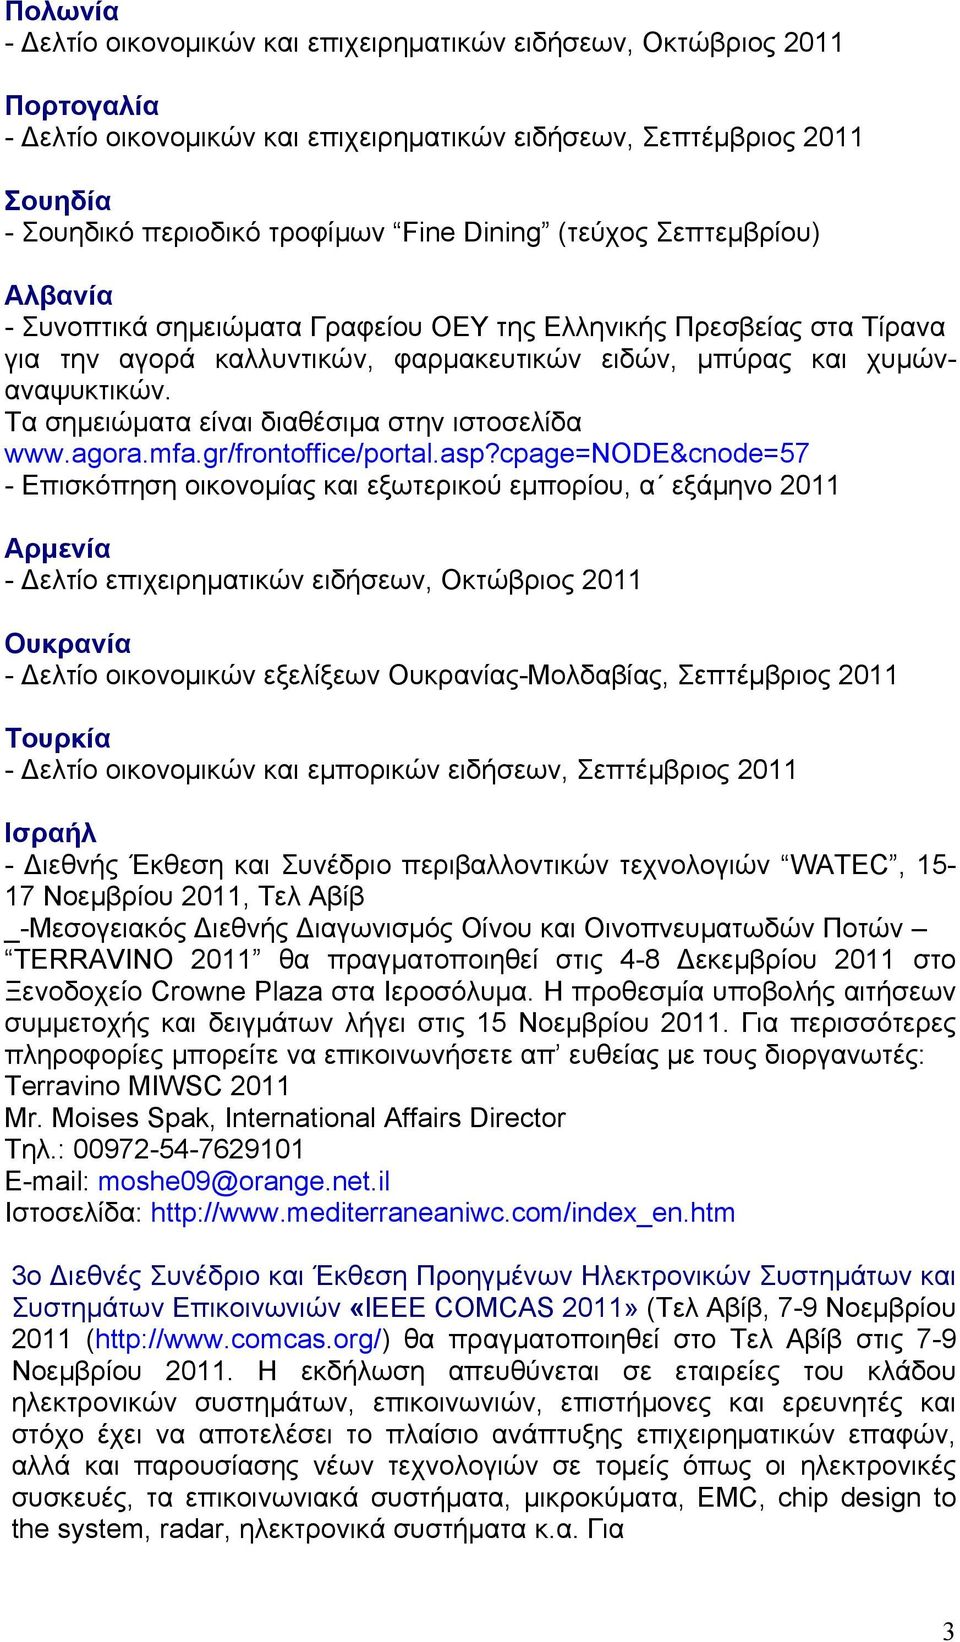 Τα σημειώματα είναι διαθέσιμα στην ιστοσελίδα www.agora.mfa.gr/frontoffice/portal.asp?